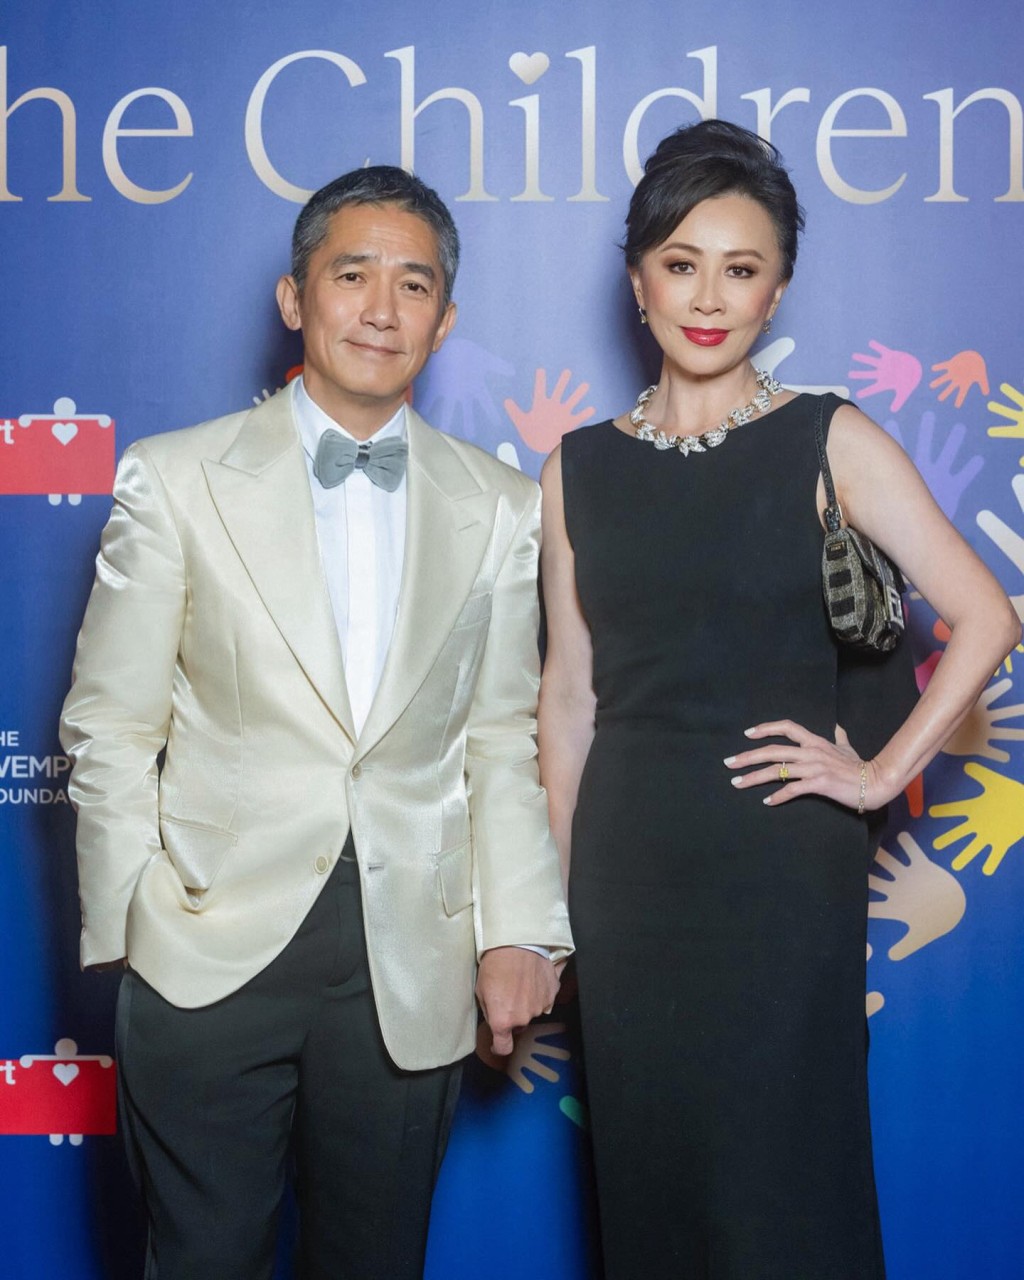 梁朝伟与刘嘉玲出席香港「The Children Ball」的筹款晚宴活动